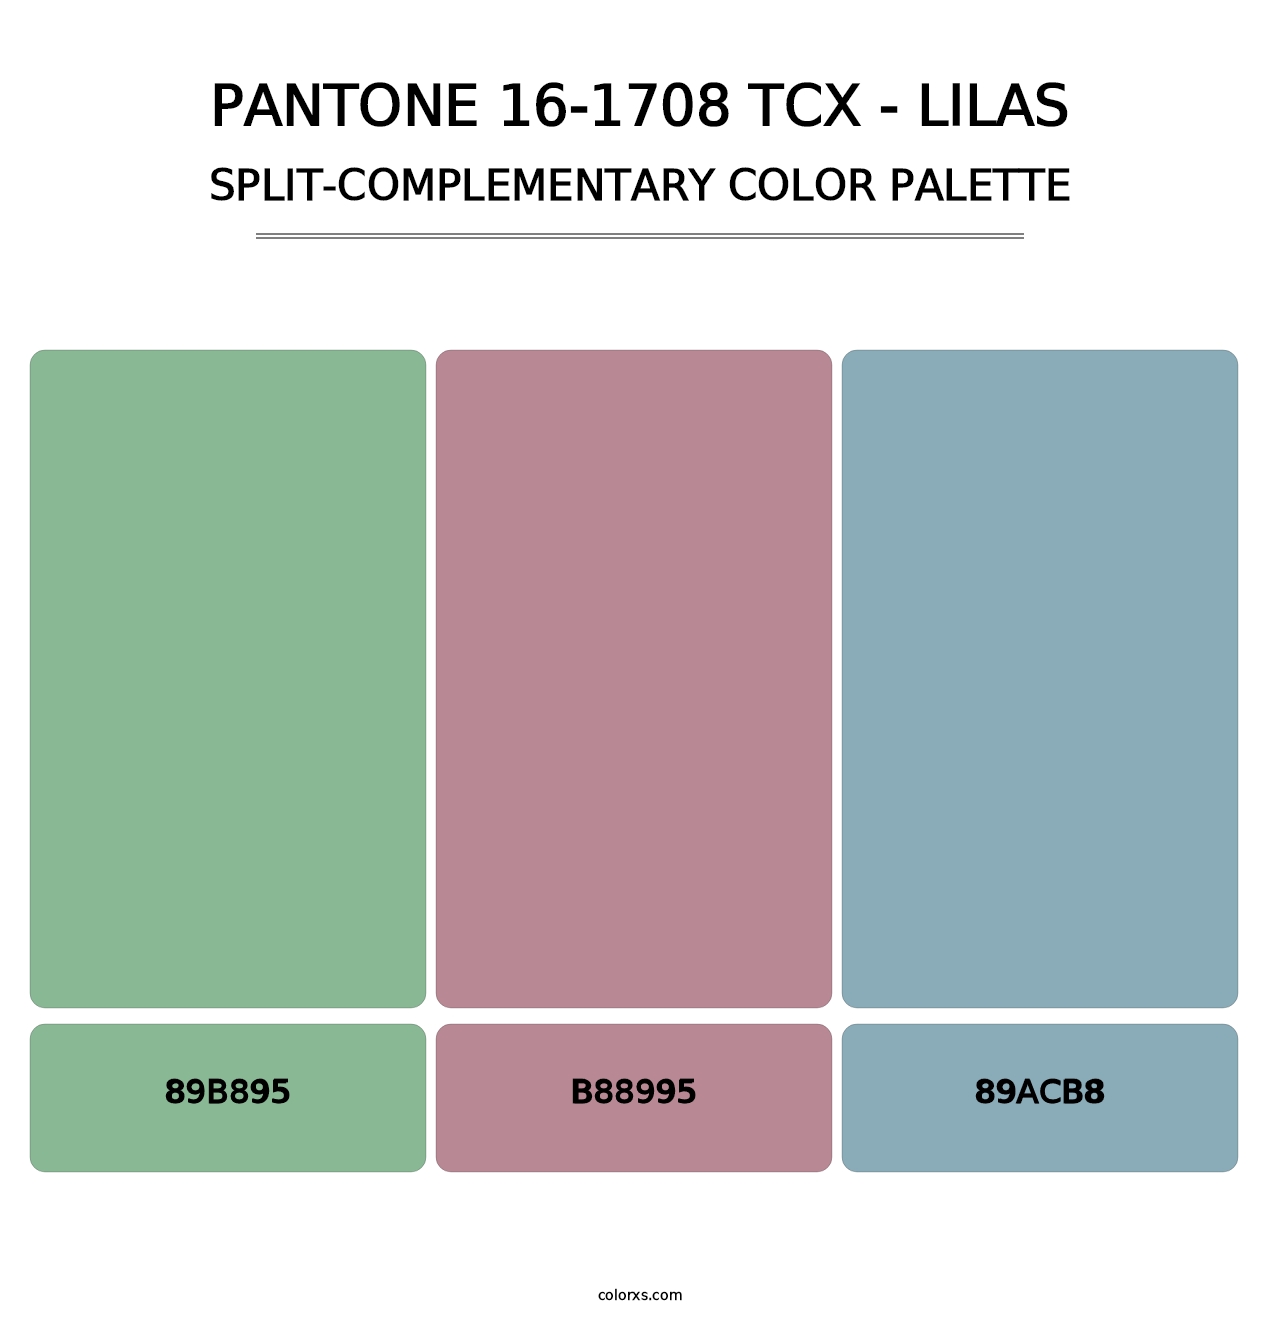 PANTONE 16-1708 TCX - Lilas - Split-Complementary Color Palette